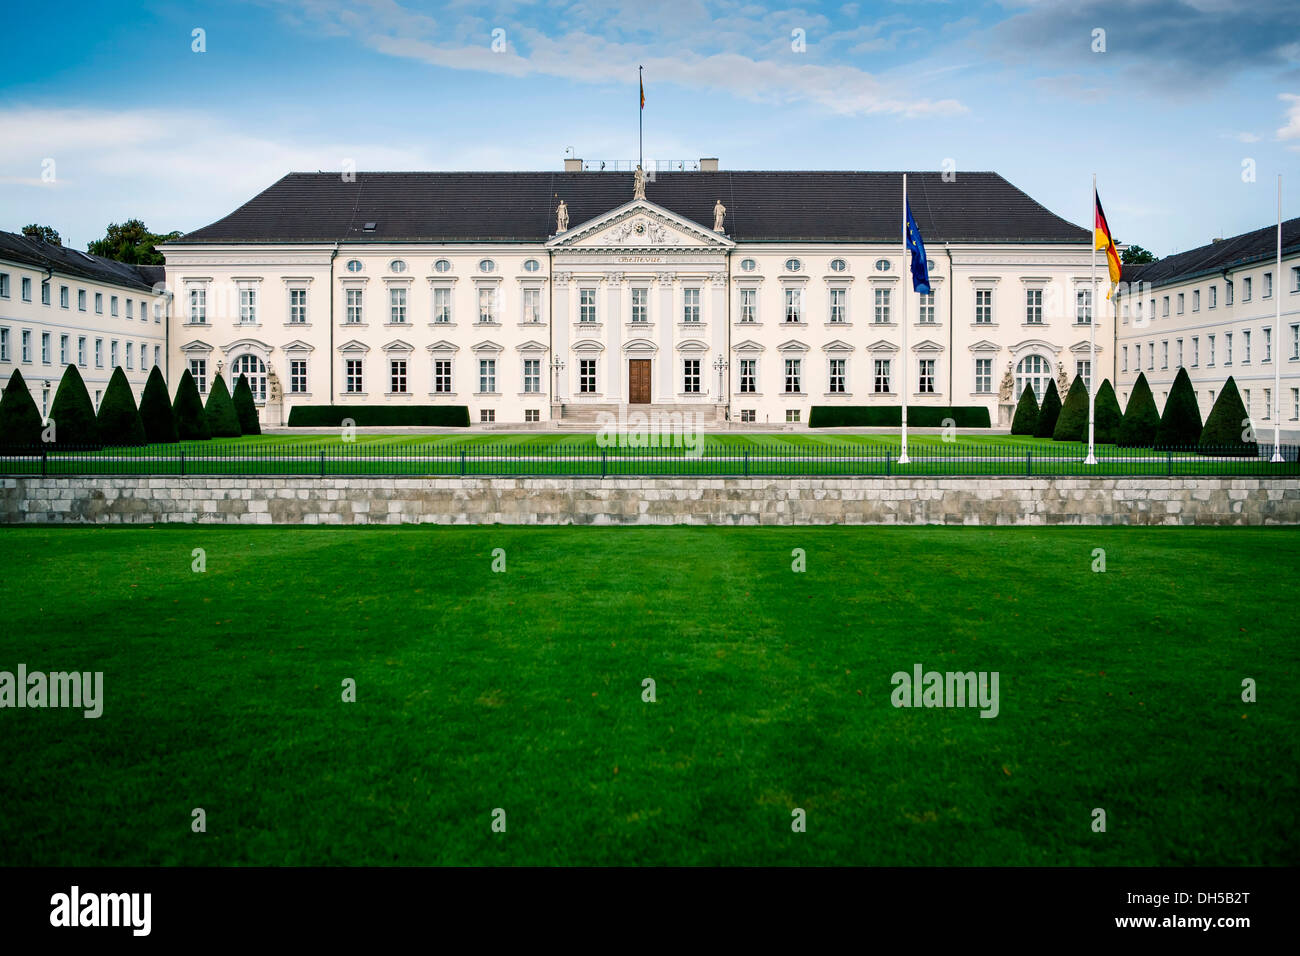 Château Bellevue Palace, résidence officielle du Président de l'Allemagne, dans le quartier berlinois de Tiergarten, Berlin Banque D'Images